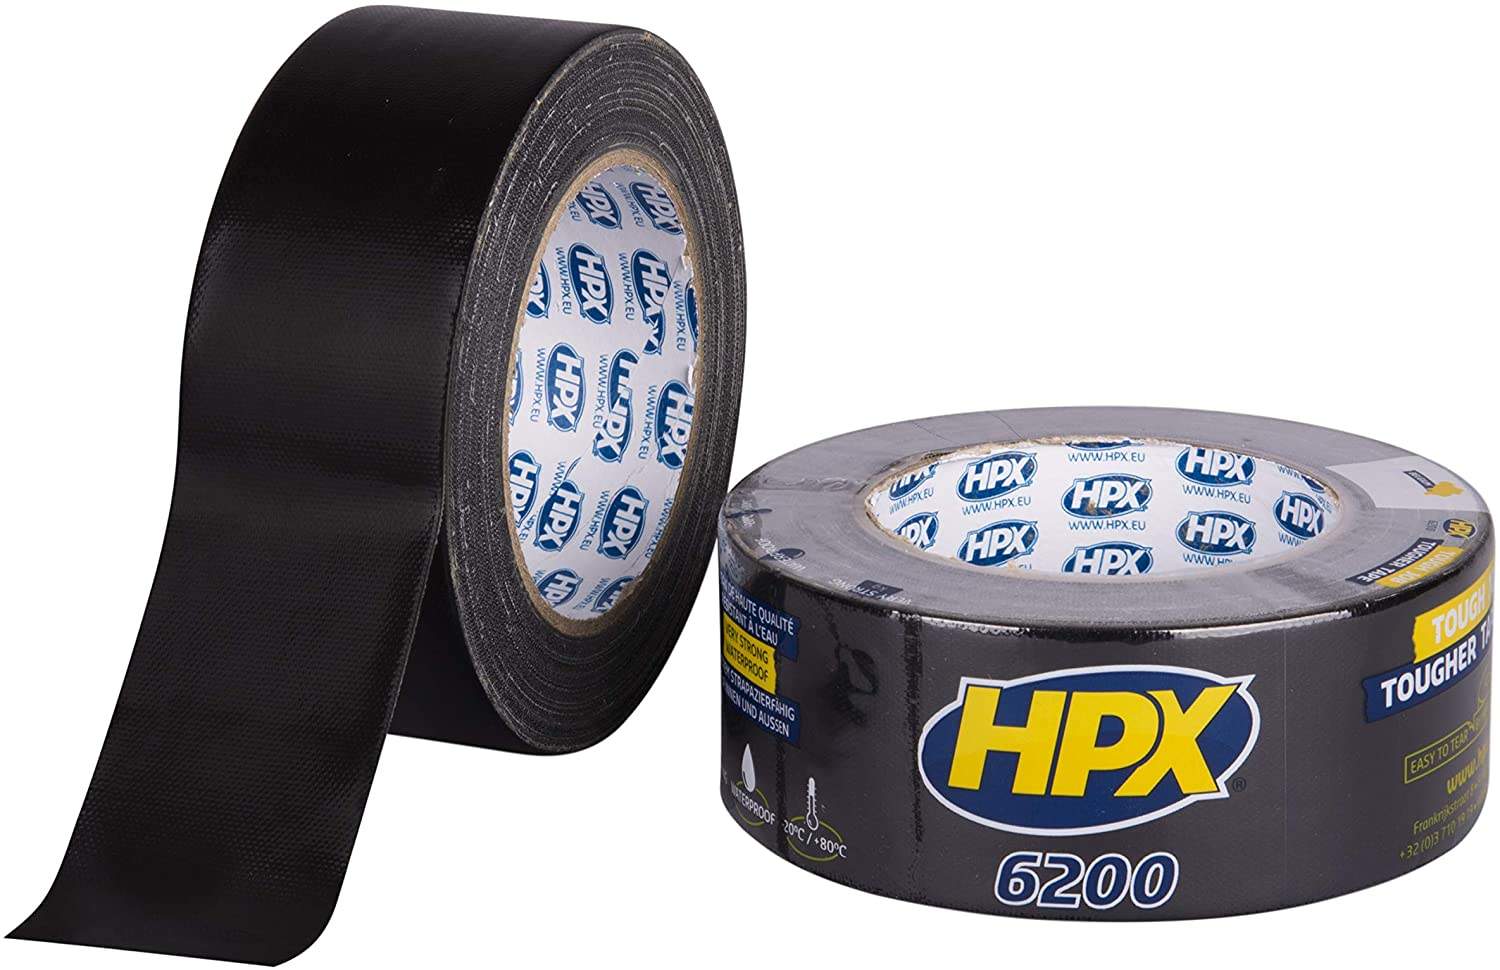 48mm x 25m black adhesive cloth tape, HPX 6200 REPAIR TAPE